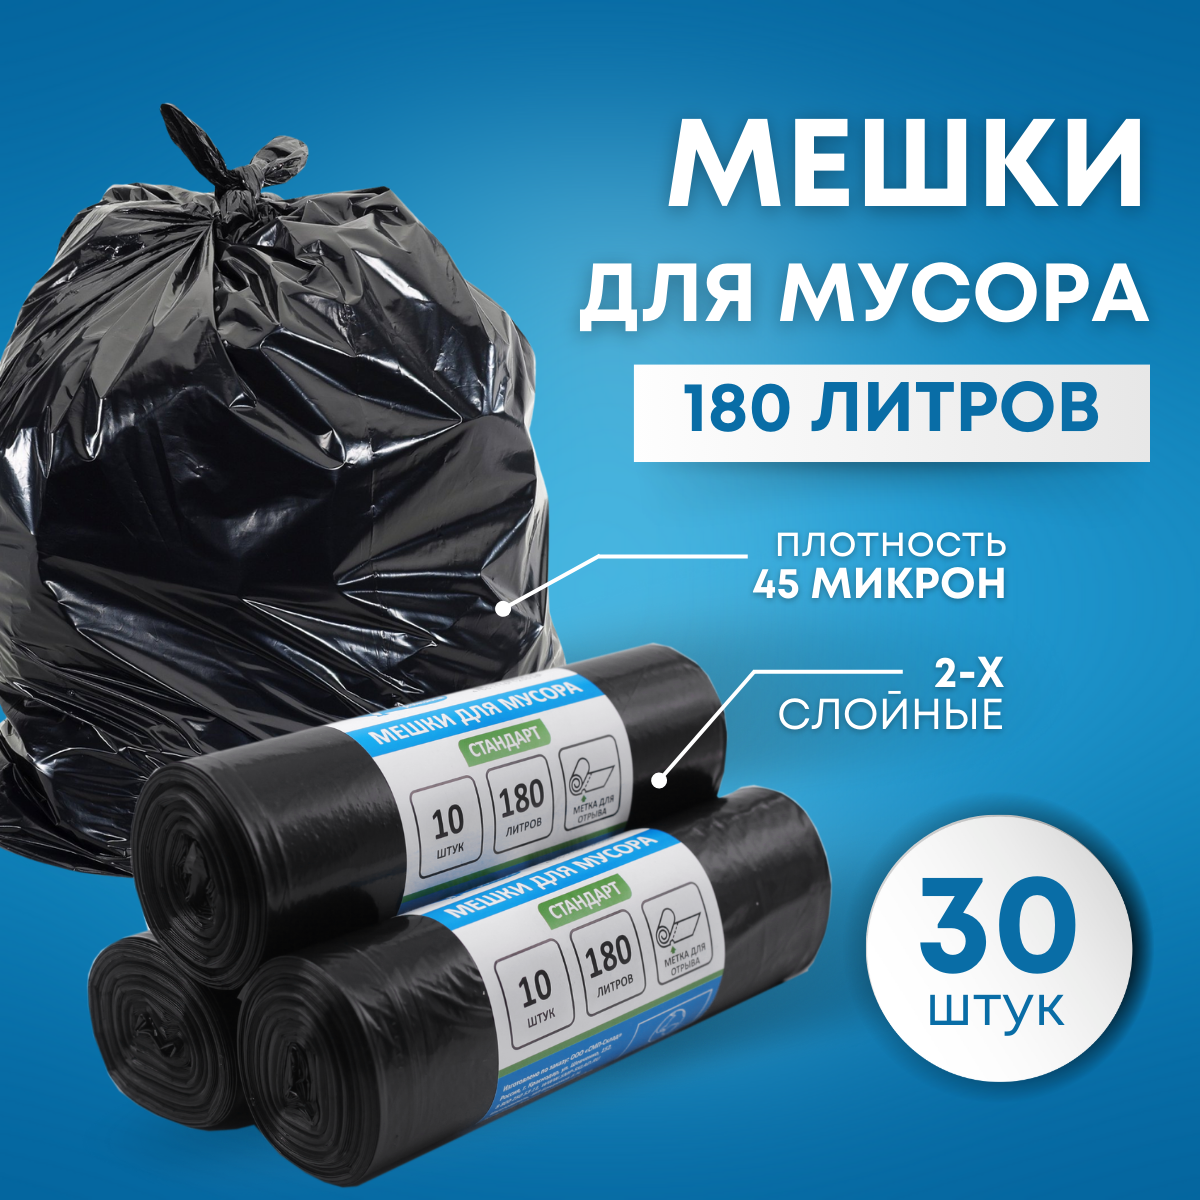 Мешки для мусора пакеты 180 литров SMP стандарт черный 45 микрон 30 штук